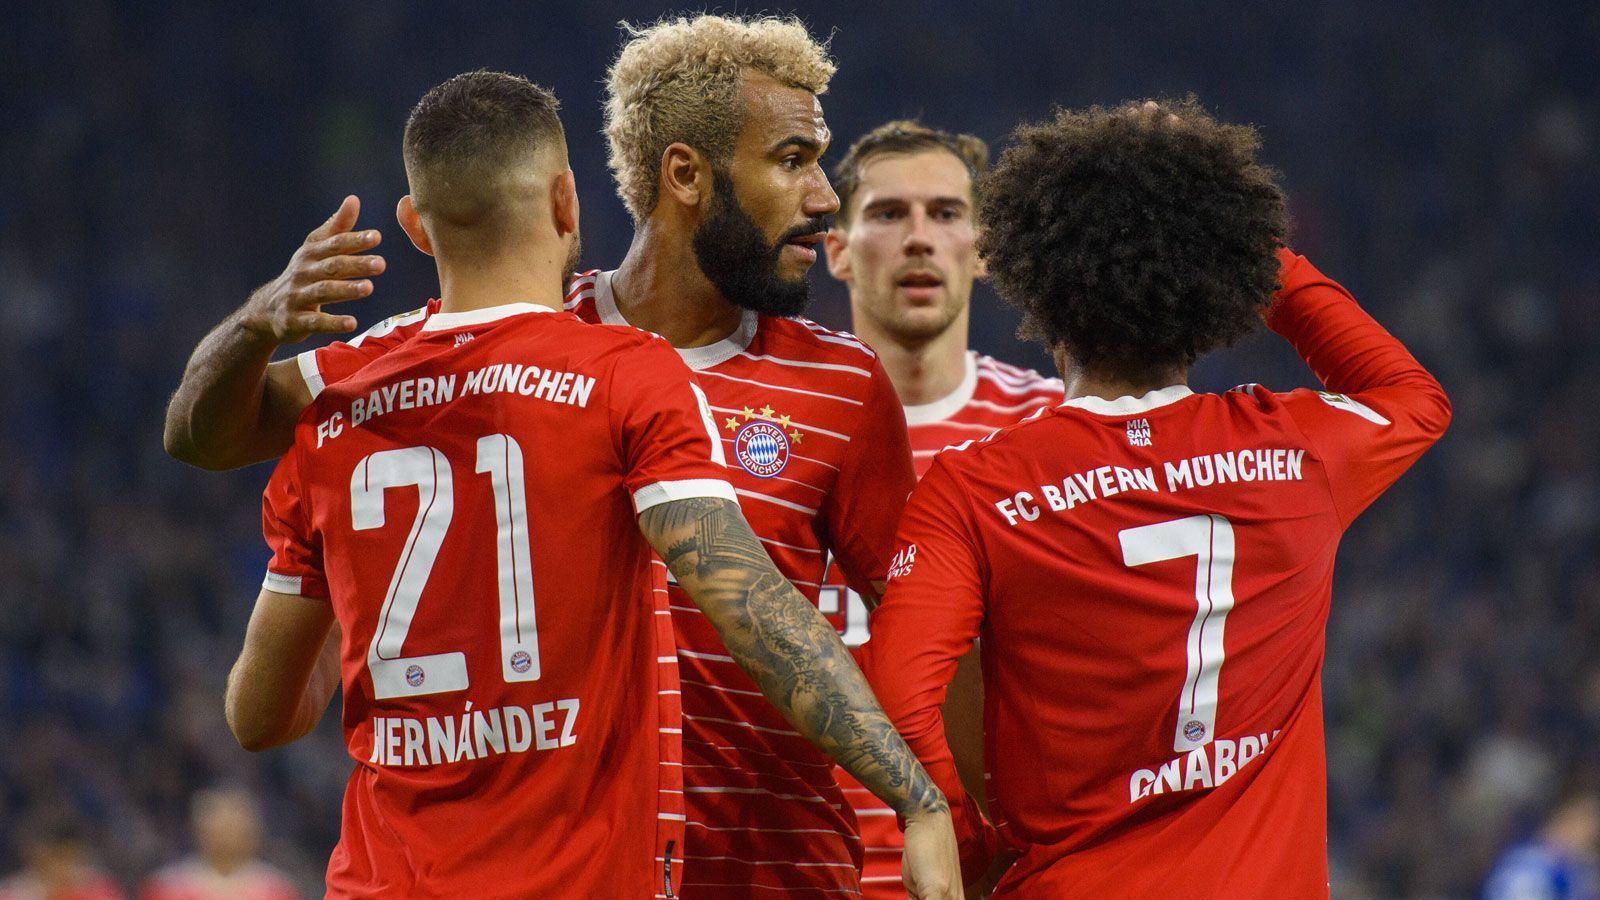 
                <strong>FC Bayern München bei Schalke 04: FCB-Stars in der Einzelkritik</strong><br>
                Das letzte Punktspiel vor der WM-Pause führte den FC Bayern München zu Aufsteiger FC Schalke 04. ran hat die Stars des Rekordmeisters beim 2:0 benotet.
              